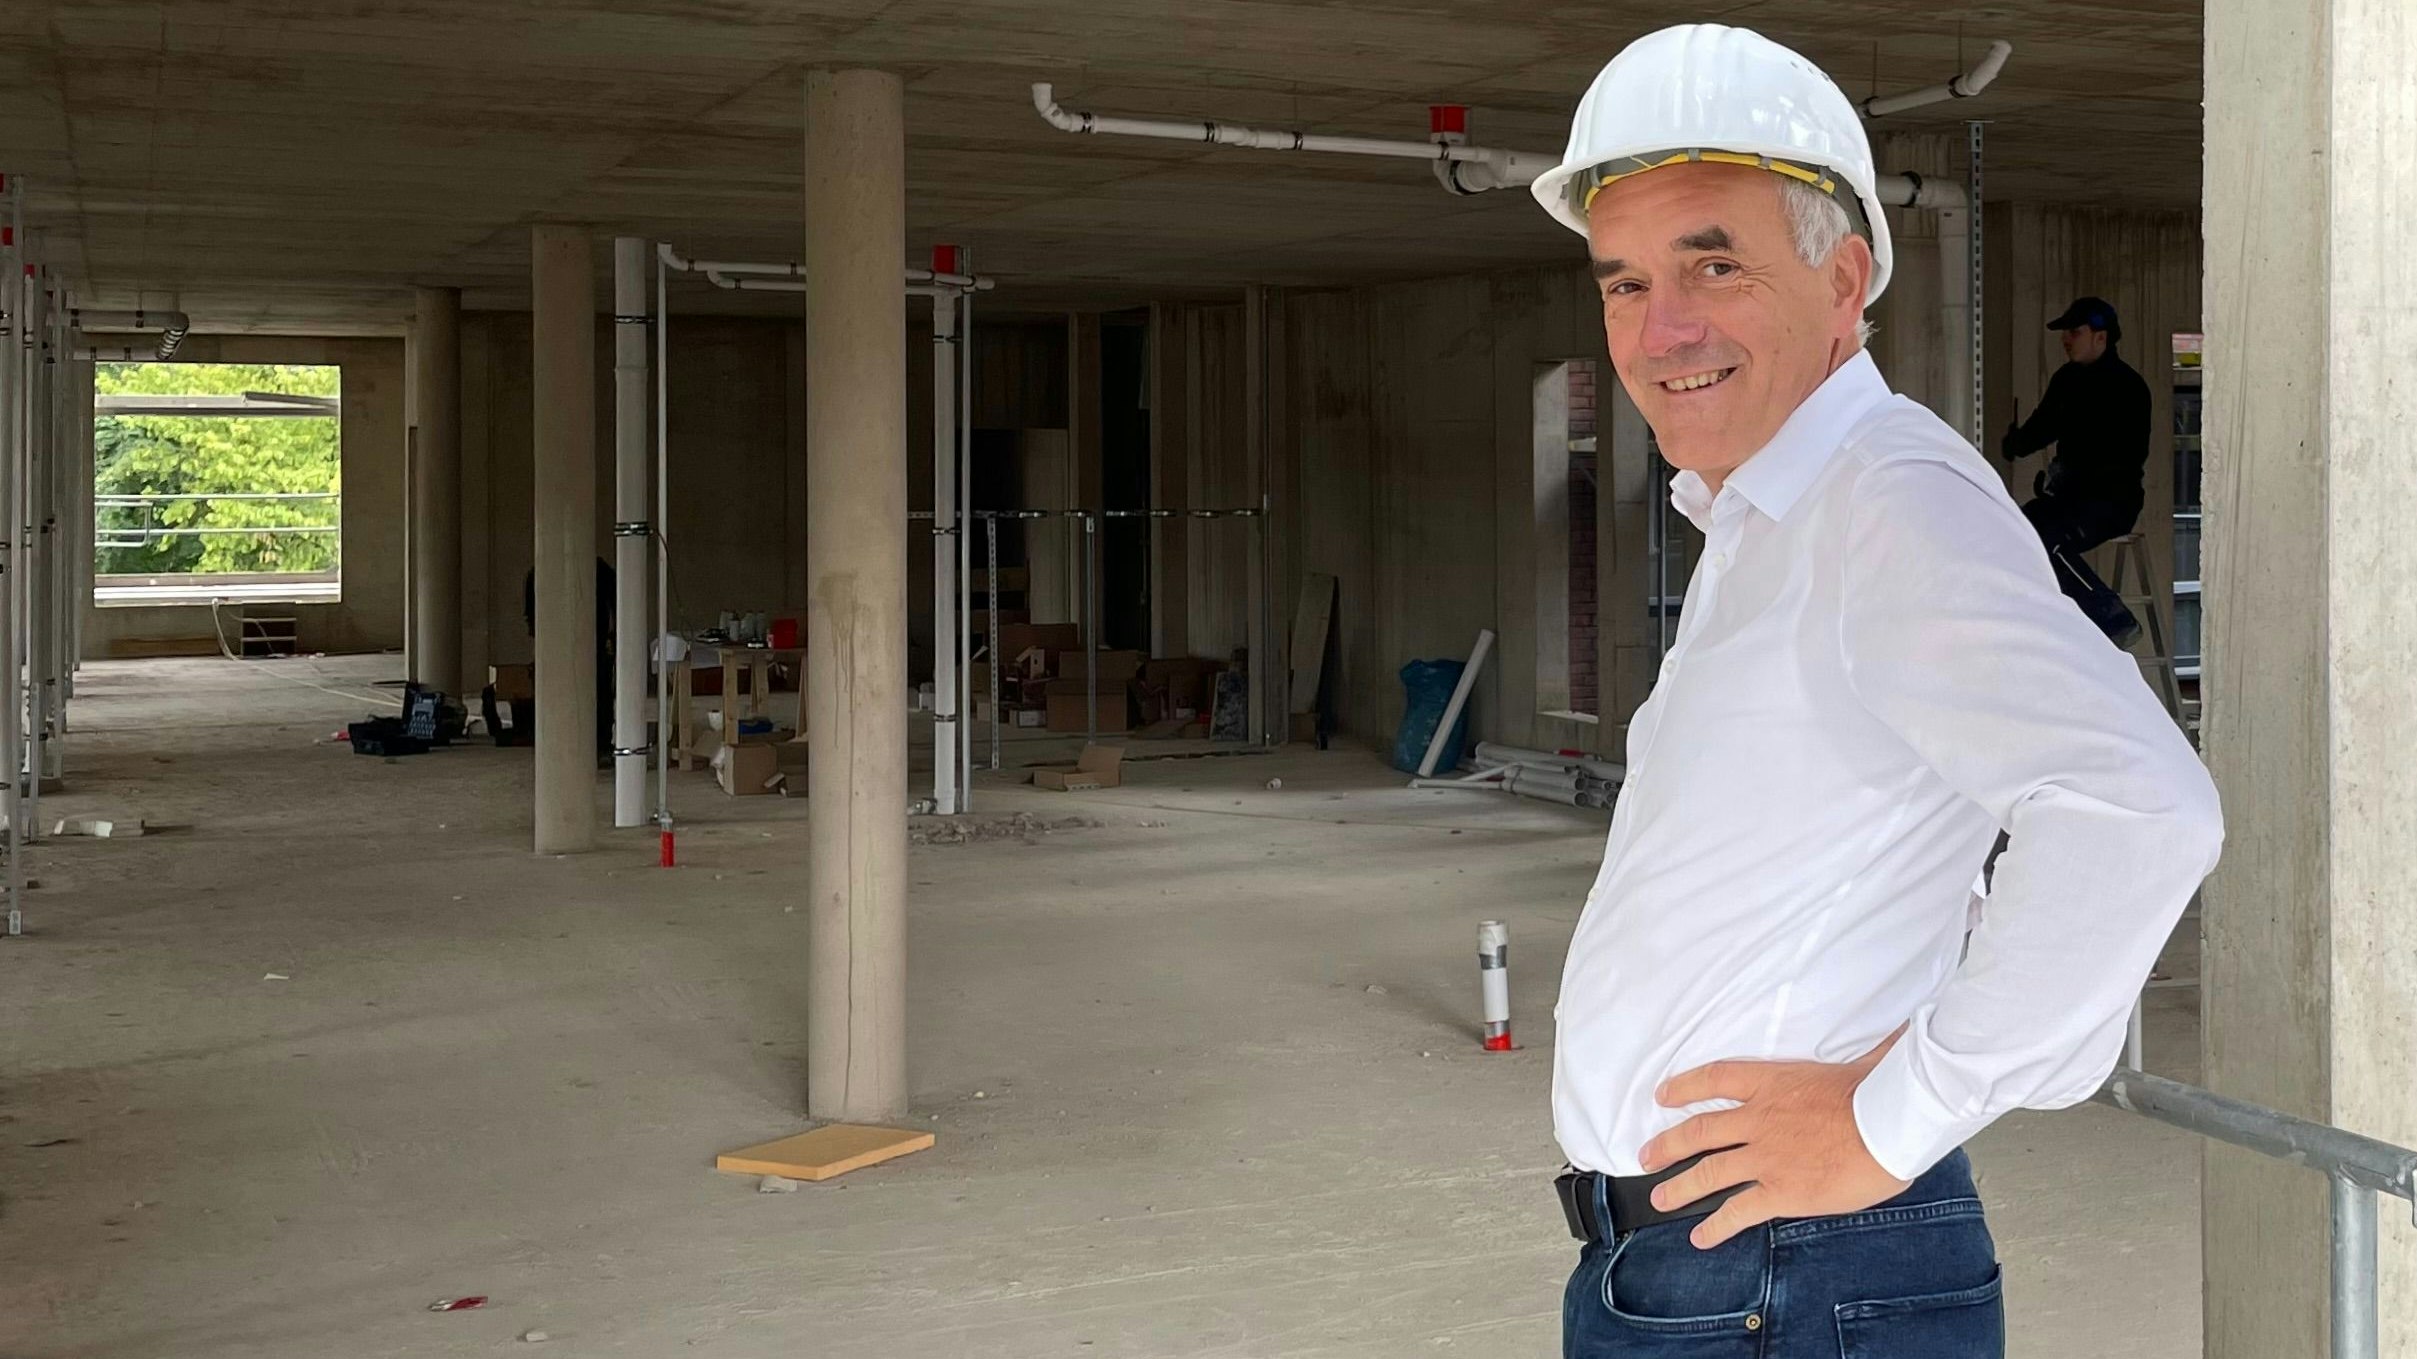 Noch im Rohbau: Krankenhaus-Geschäftsführer Bernd Wessels hofft, dass er die Patientenzimmer im Neubau in rund 12 Monaten eröffnen kann. Foto: Stix